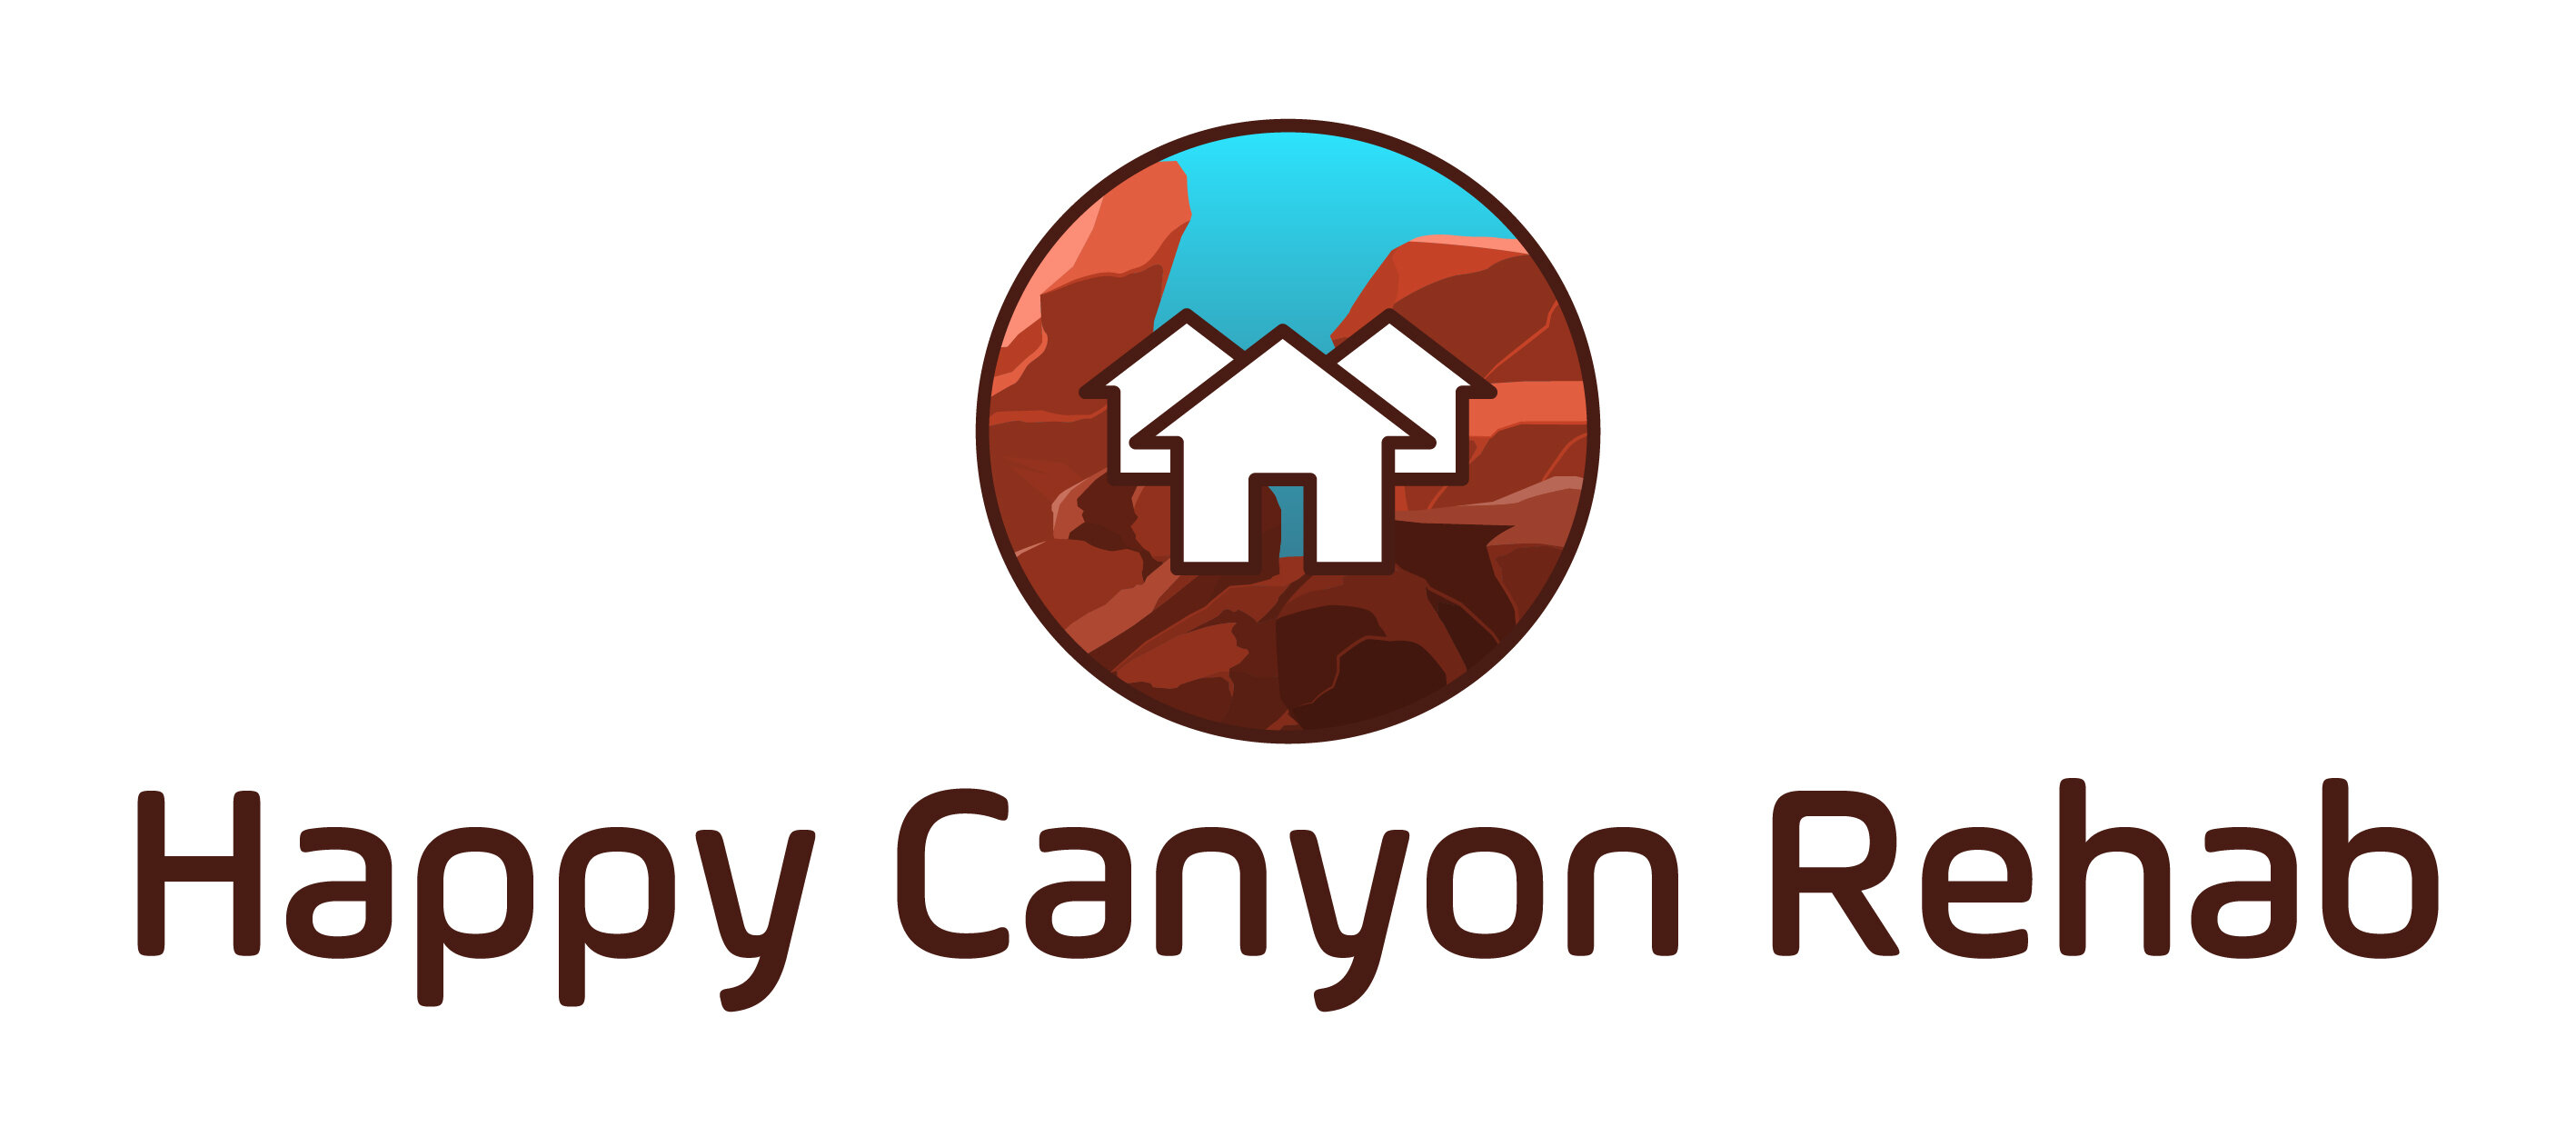 Happy Canyon Rehab logo